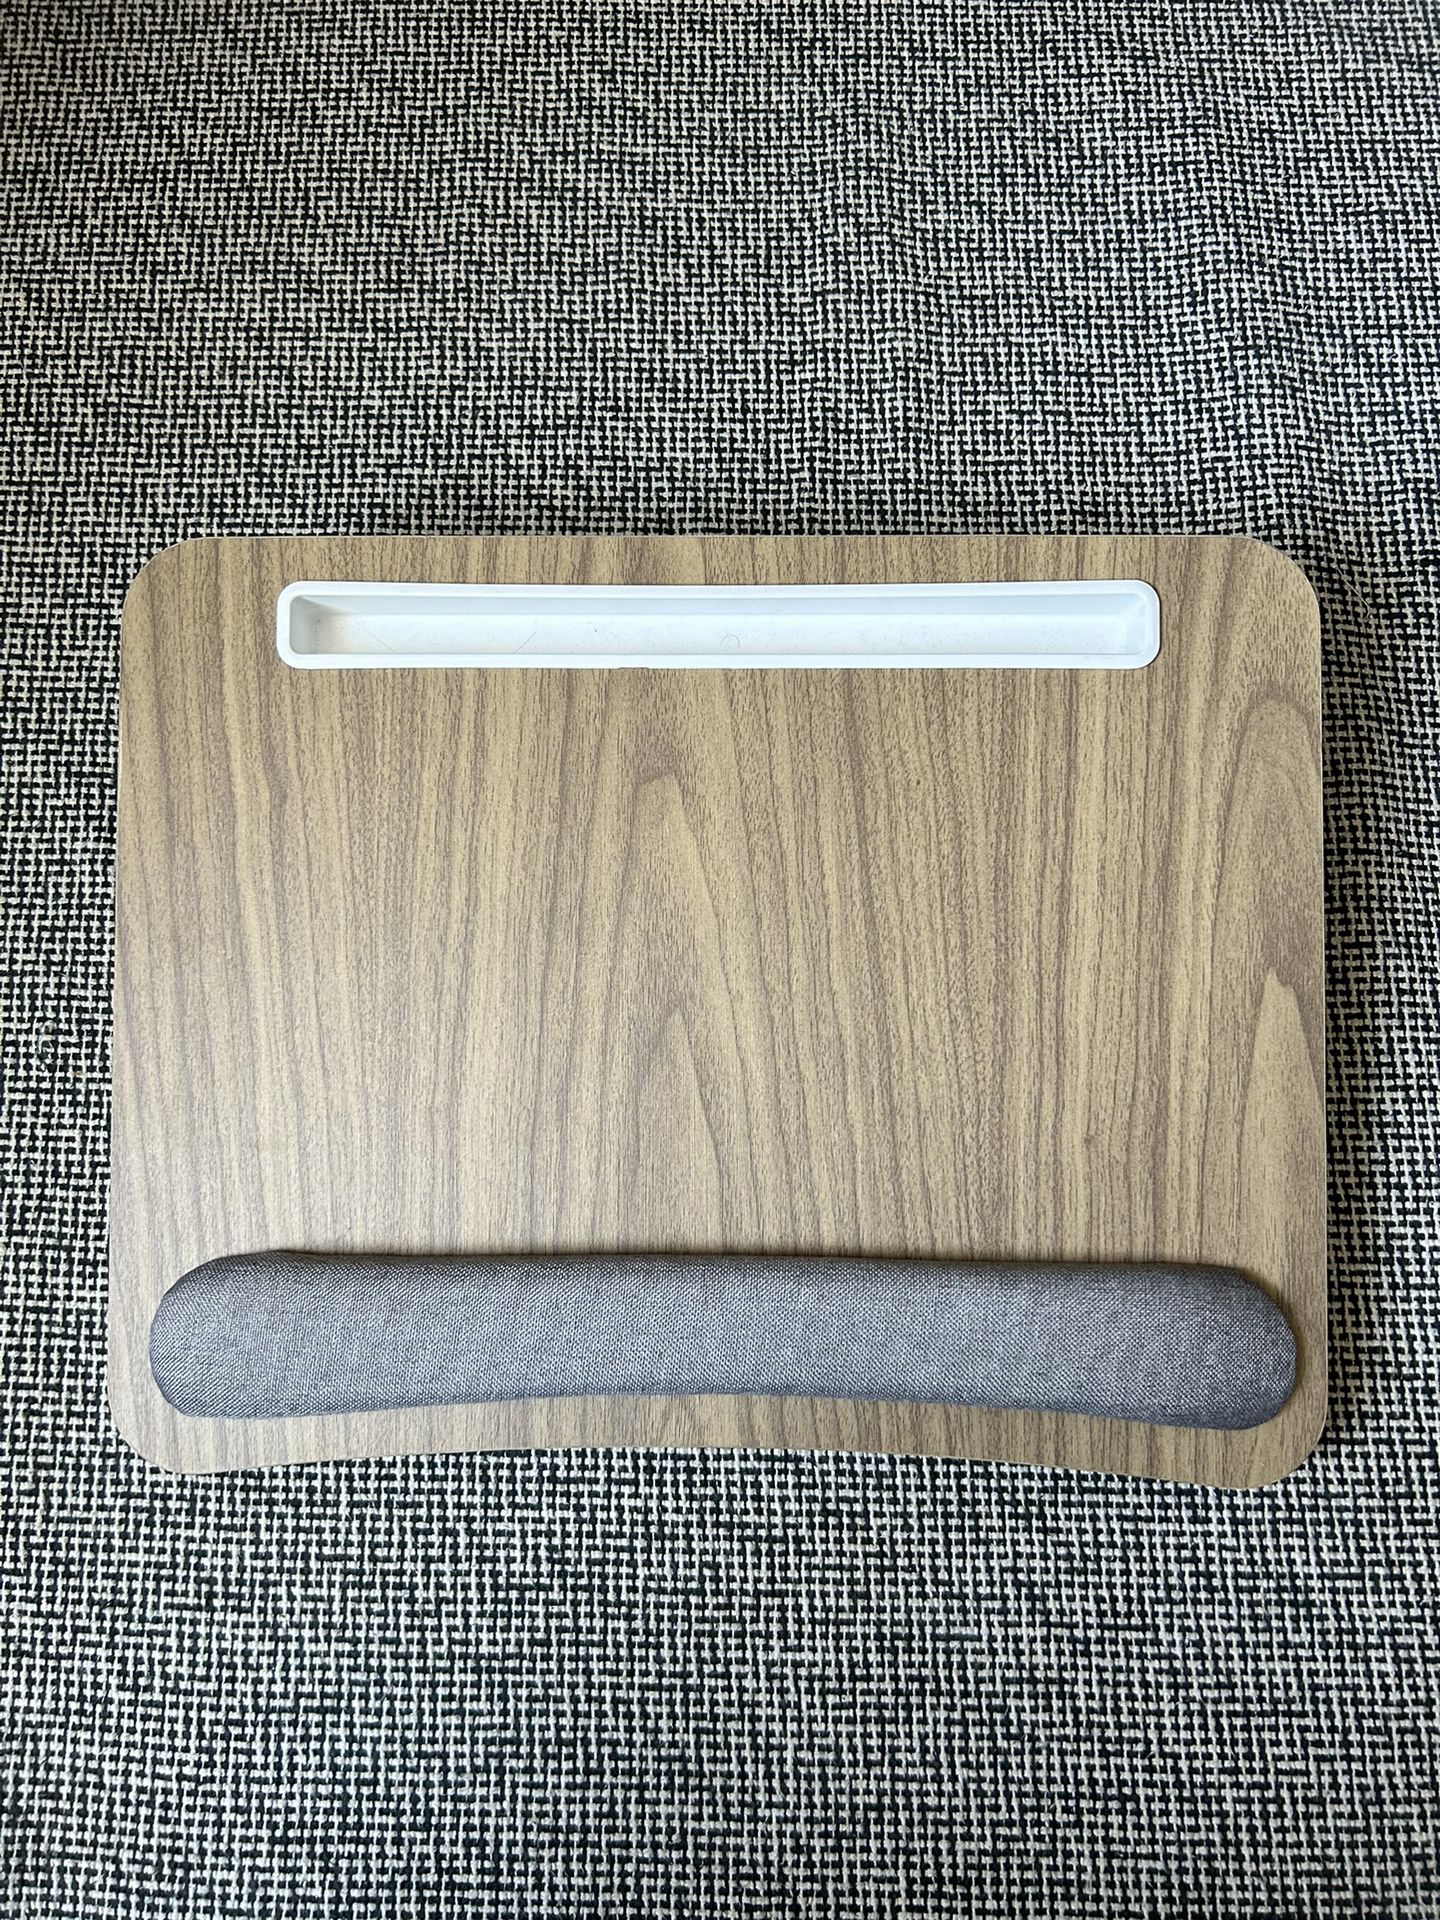 Portable Lap Desk For Laptops